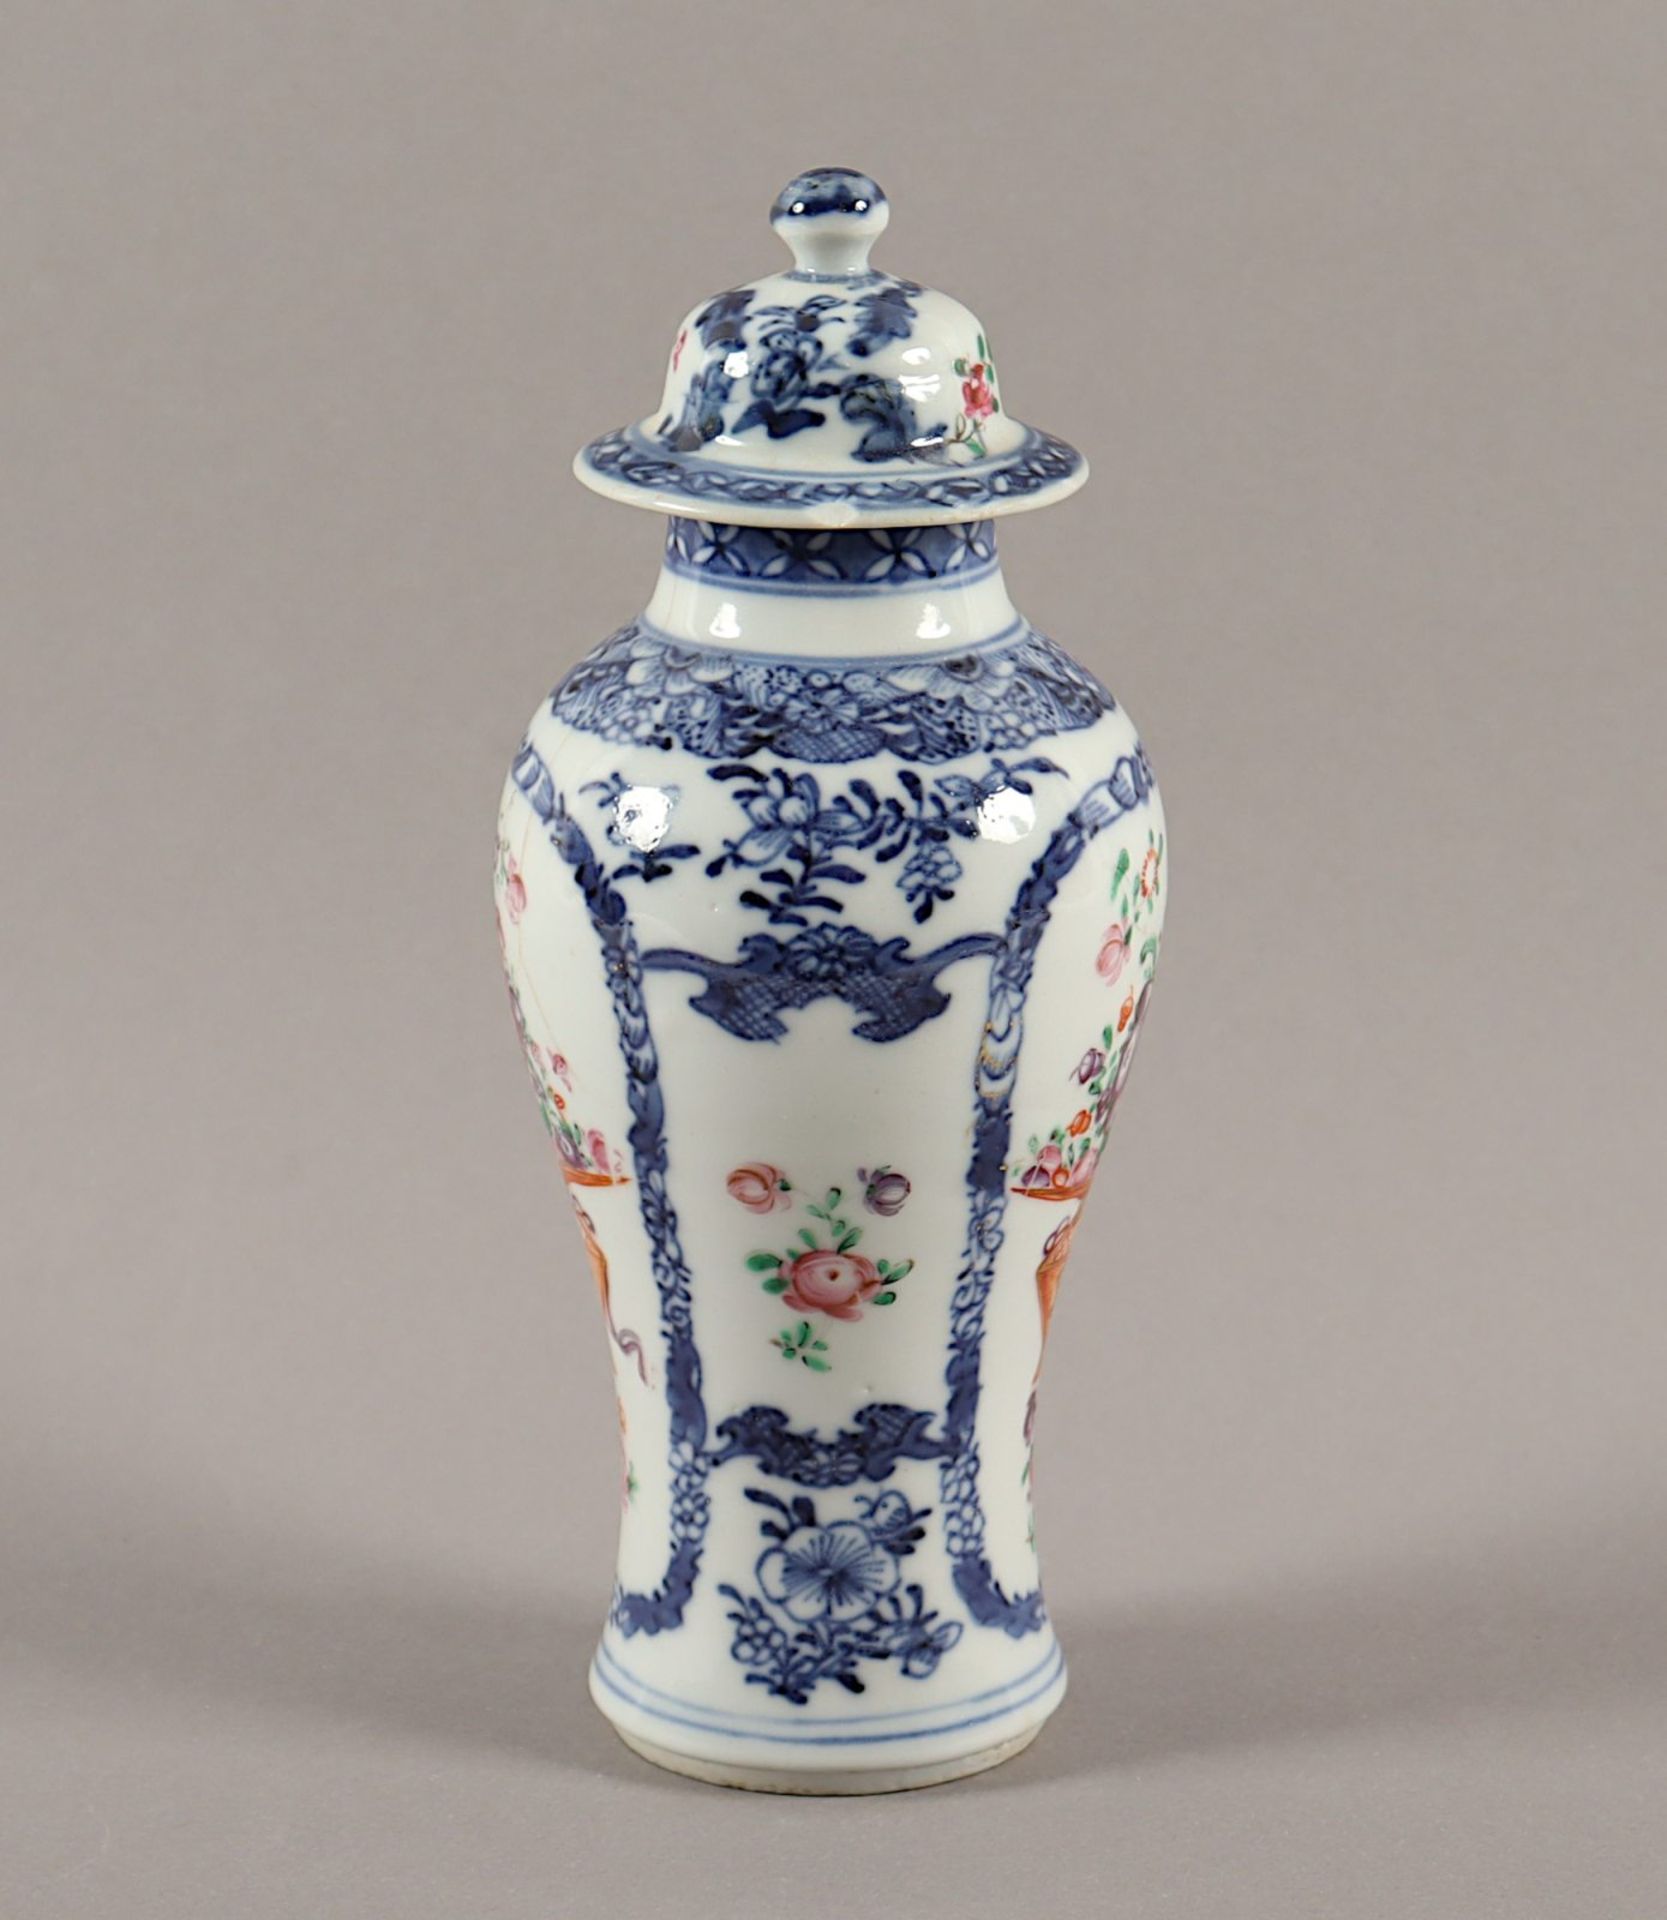 Deckelvase, Porzellan, China, um 1800 - Bild 2 aus 5